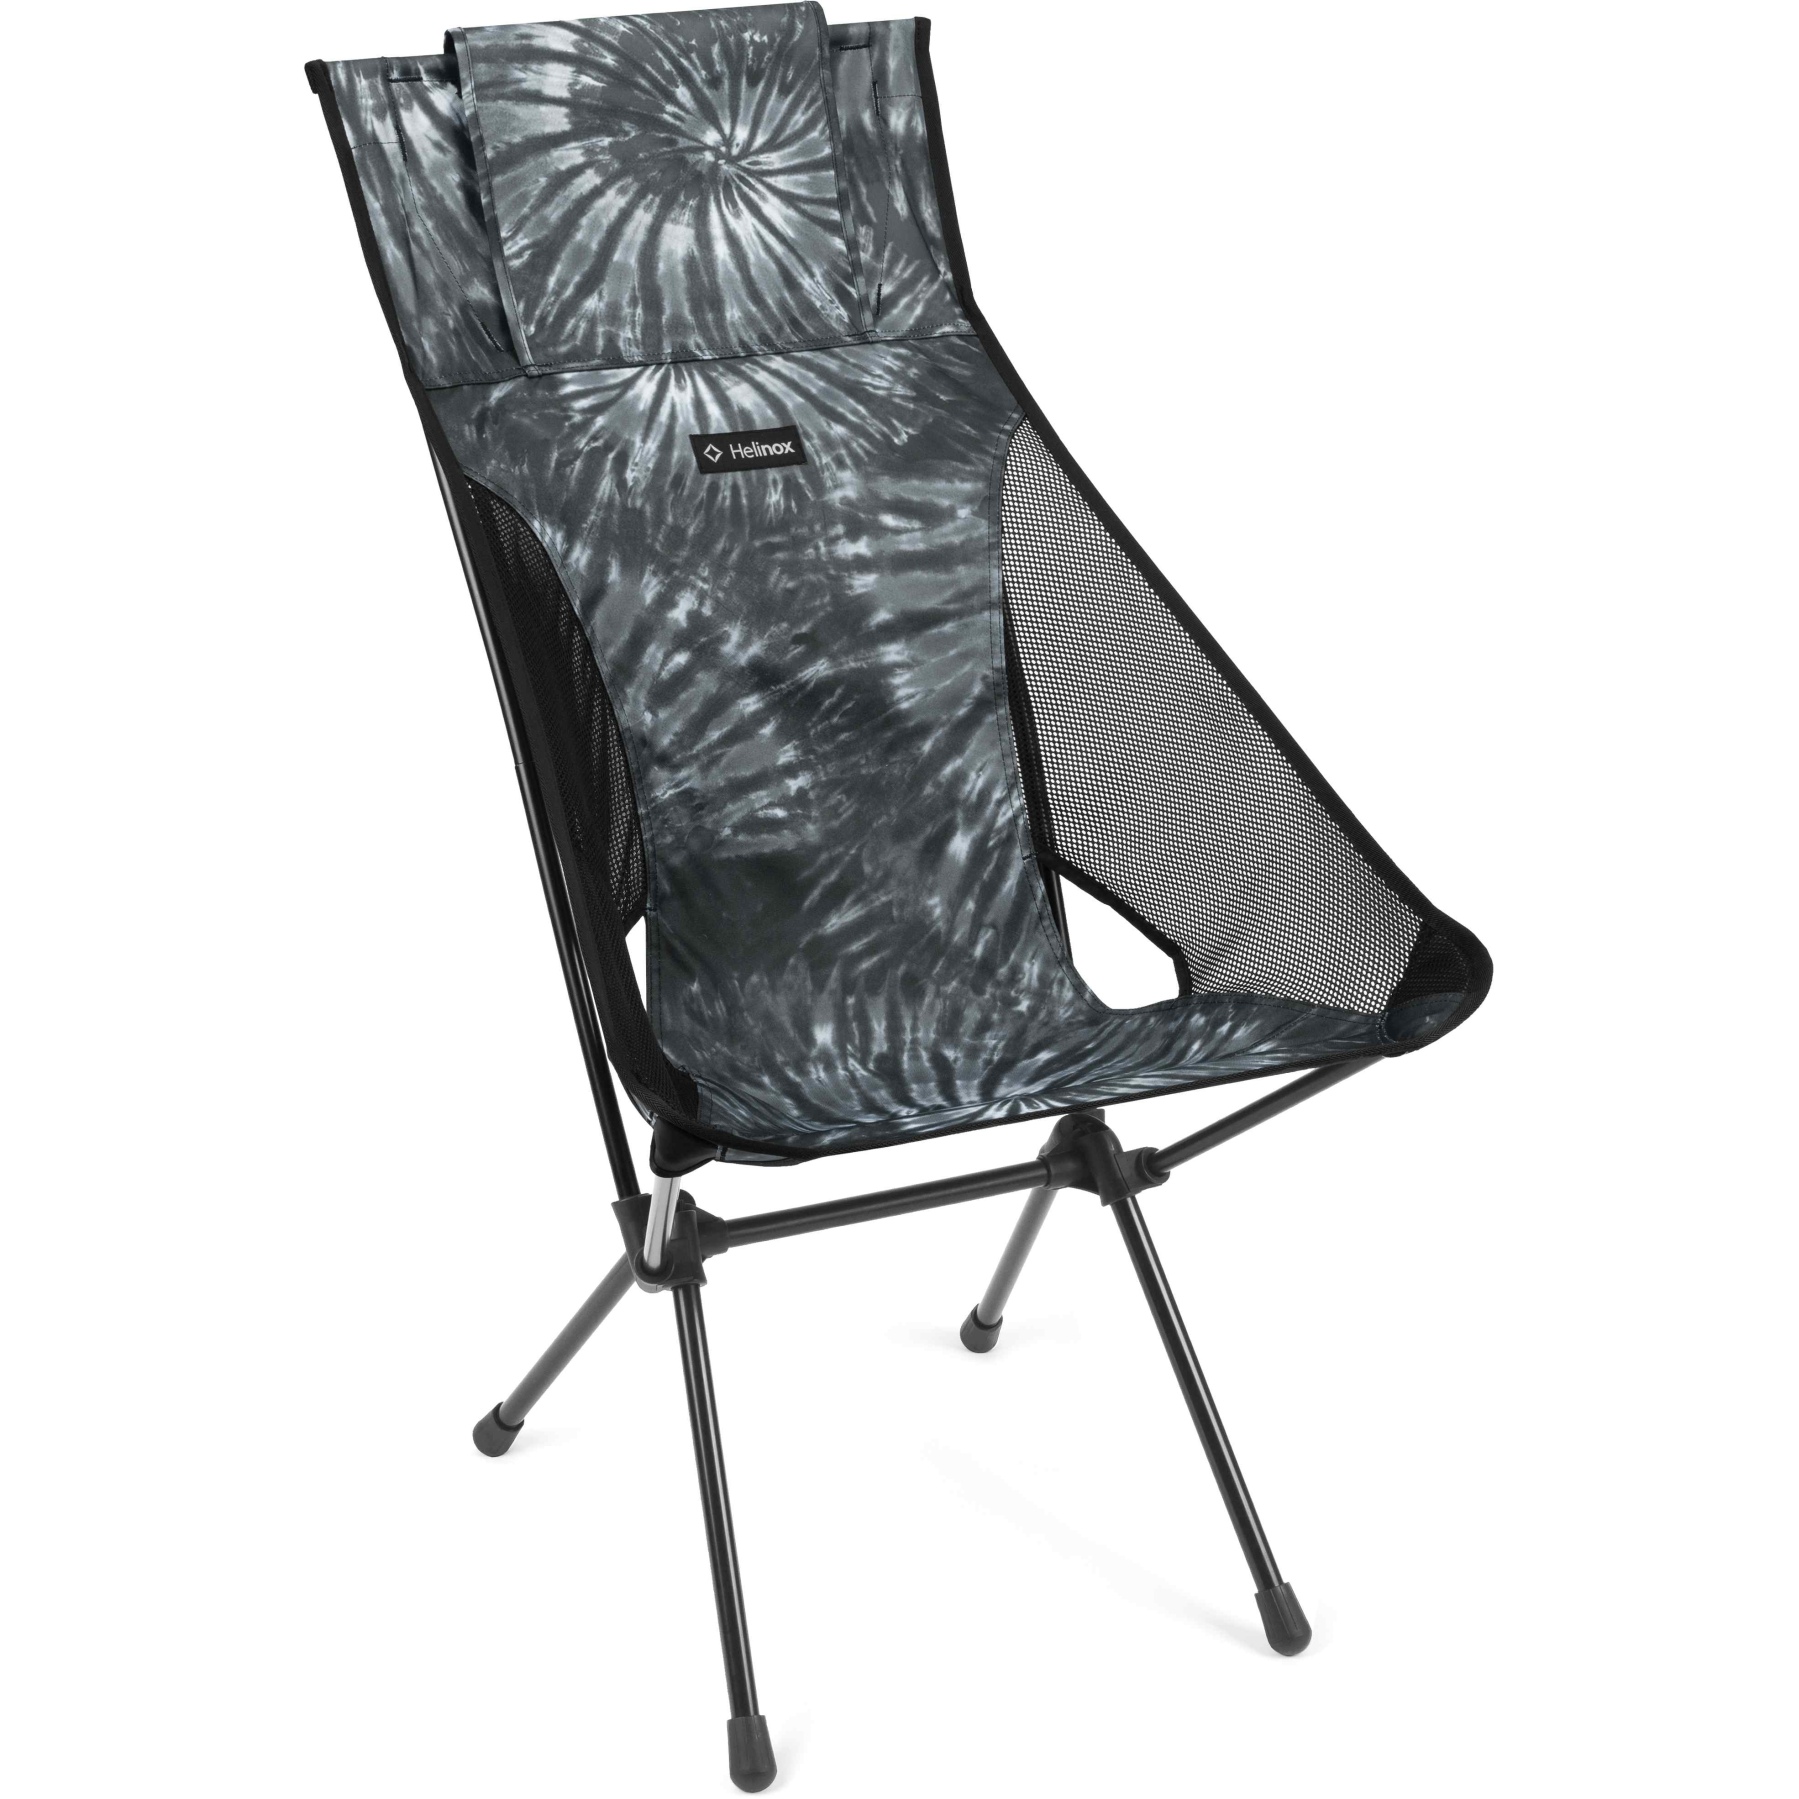 Productfoto van Helinox Sunset Chair - Campingstoel - Black Tie Dye / Zwart